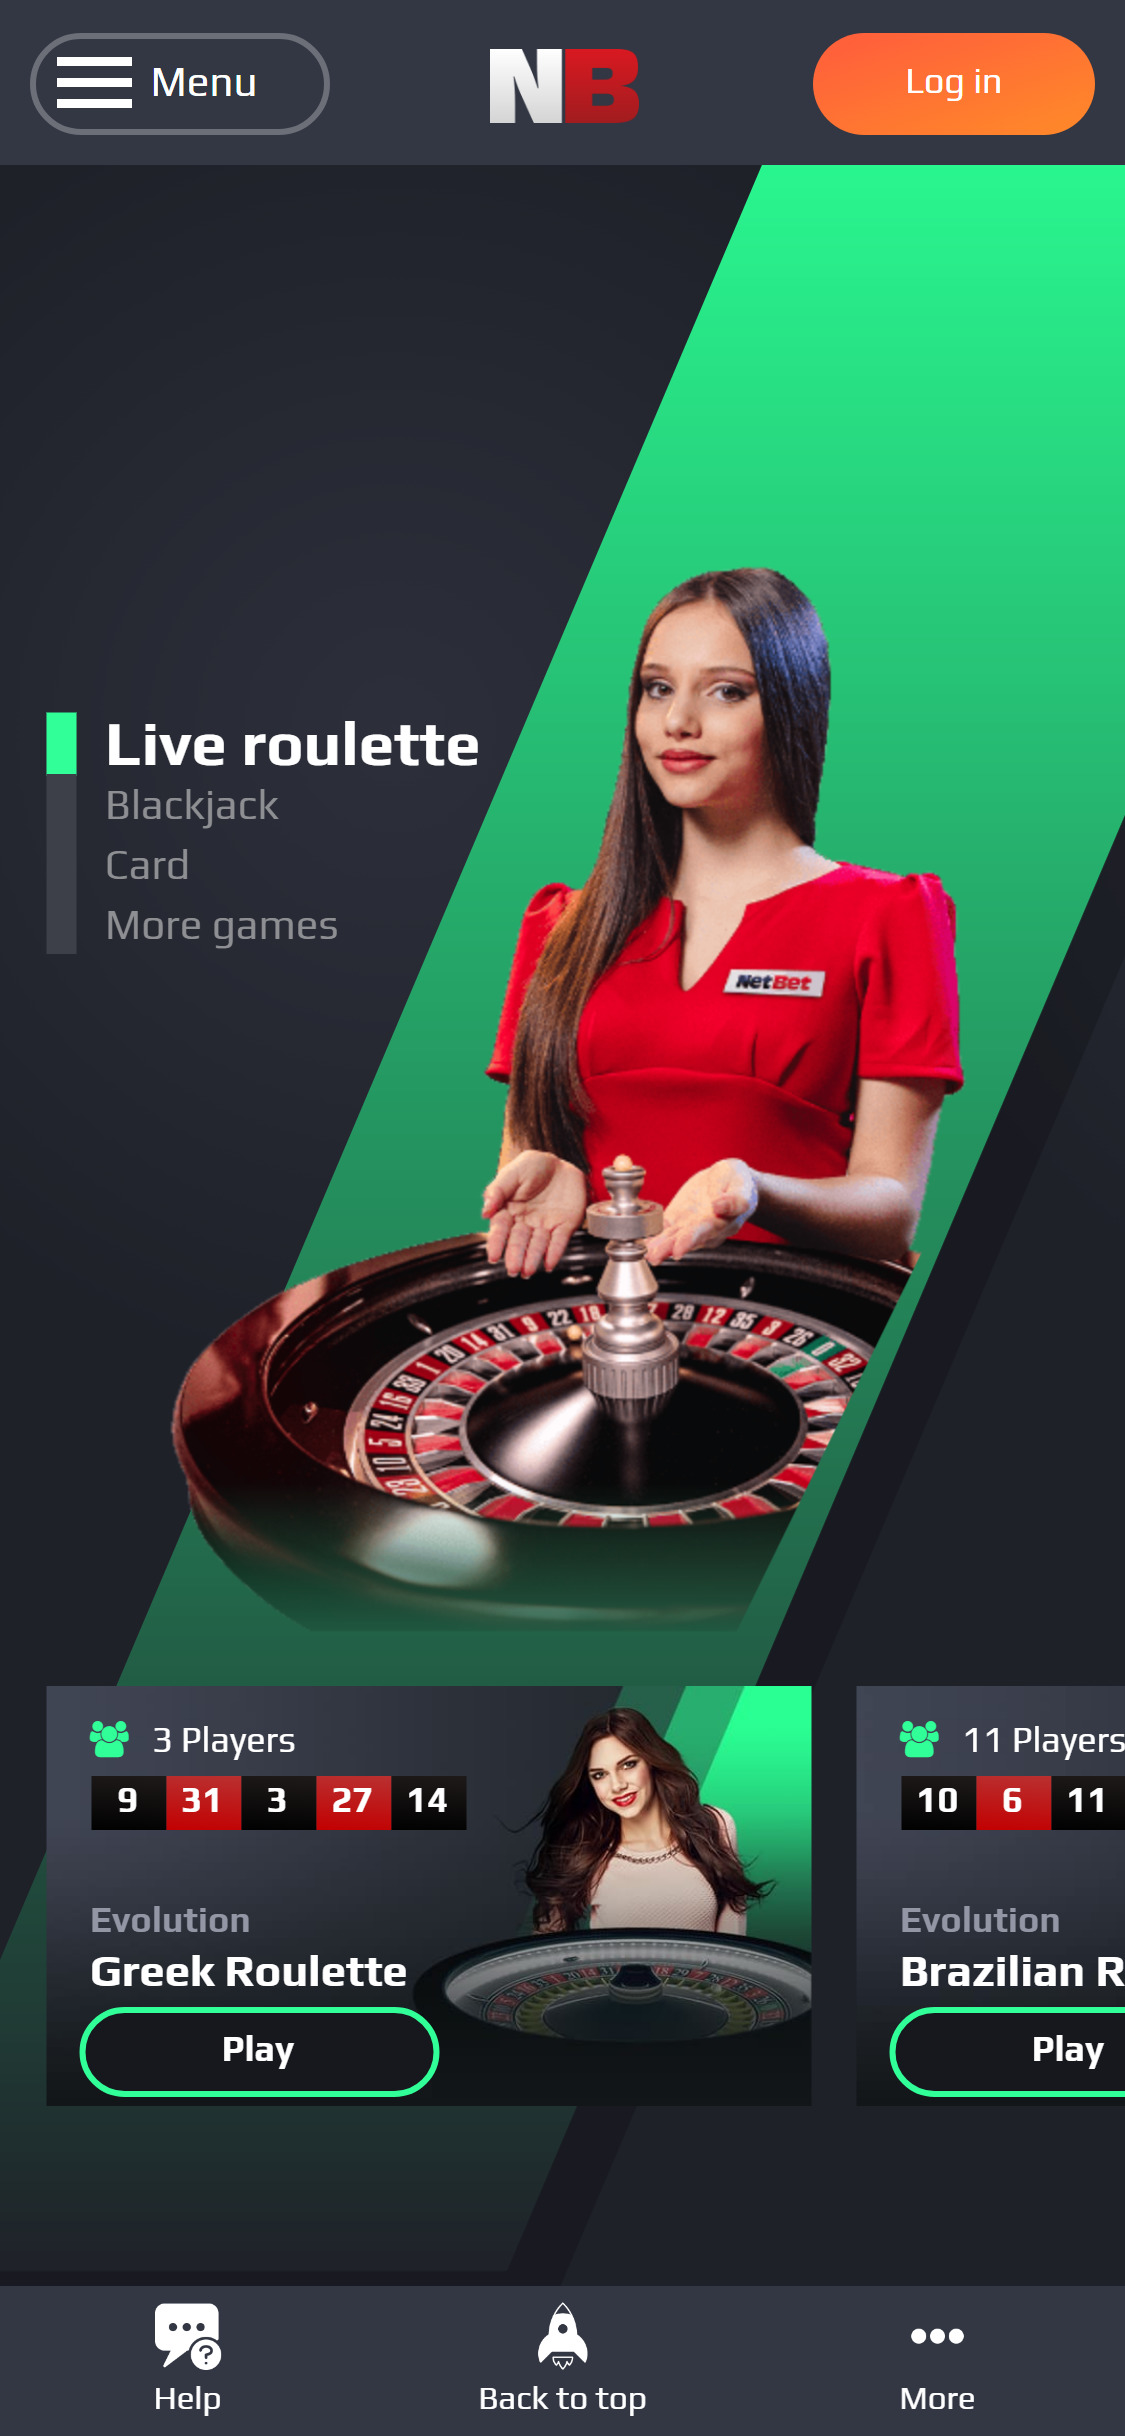 NetBet Vegas Casino UK Mobile Live Dealer Games Review